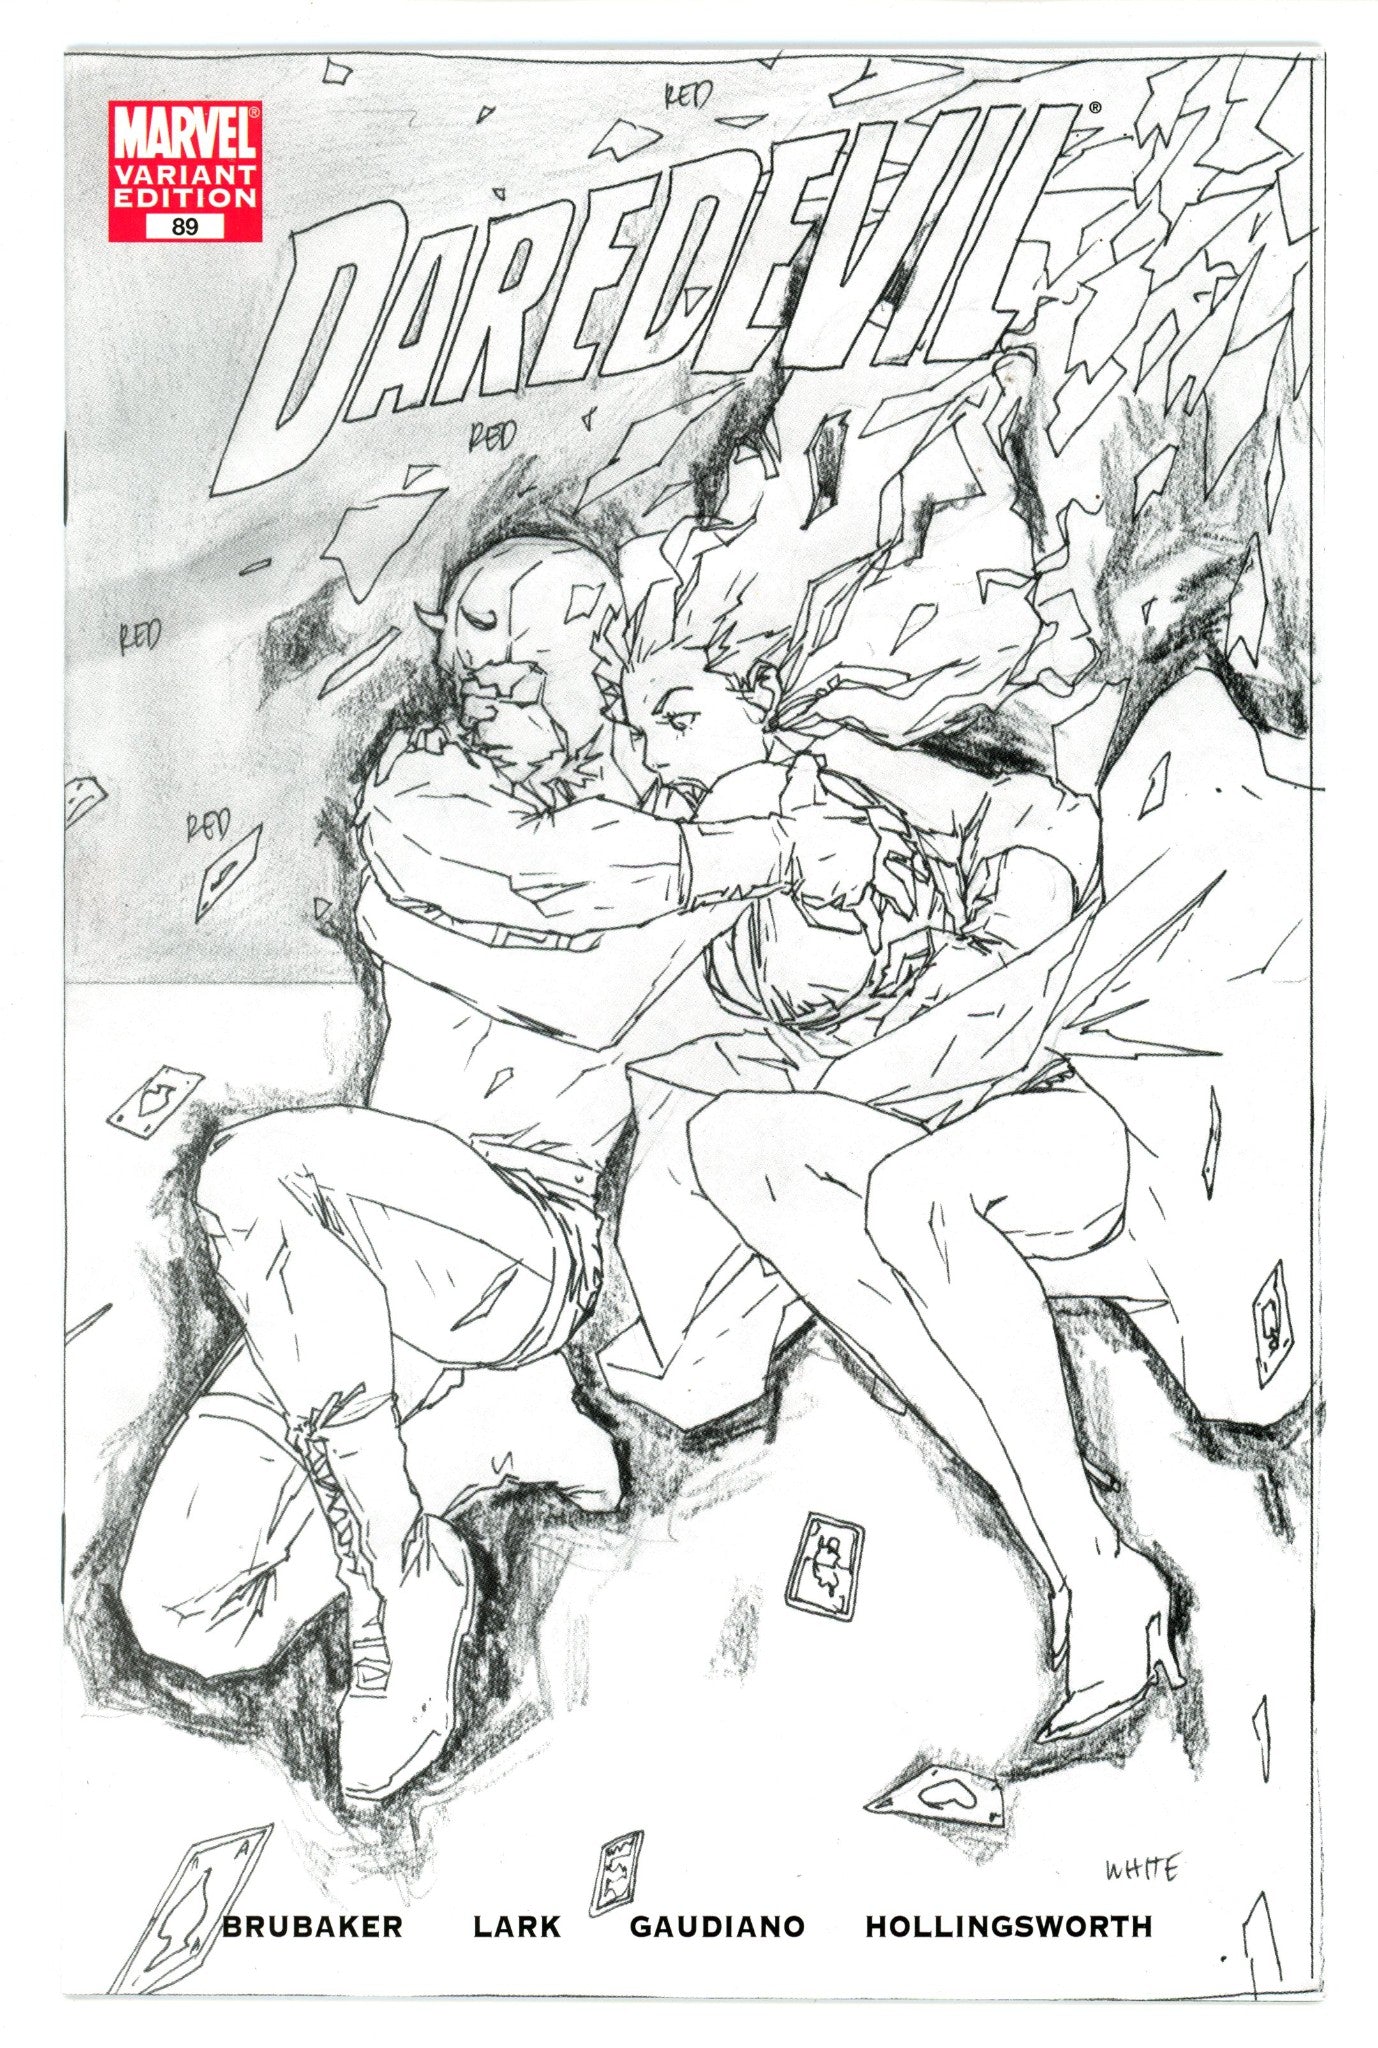 Daredevil Vol 2 89 High Grade (2006) Bermejo Sketch Variant 